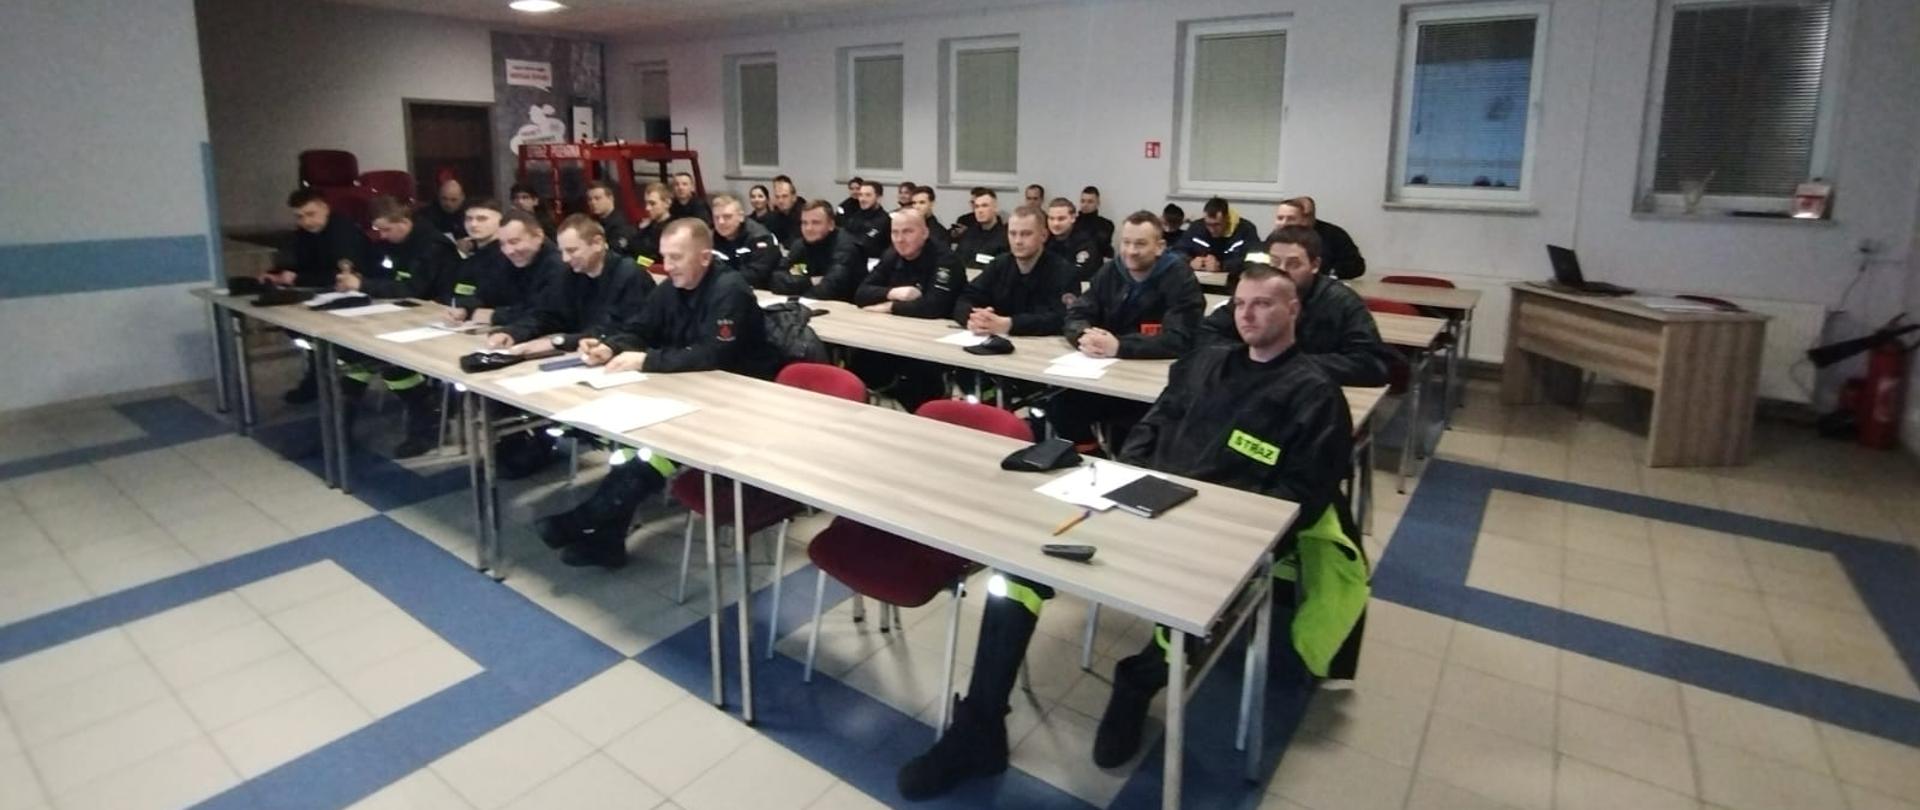 Uczestnicy kursu podstawowego OSP siedzący w czterech rzędach ławek na sali szkoleń.